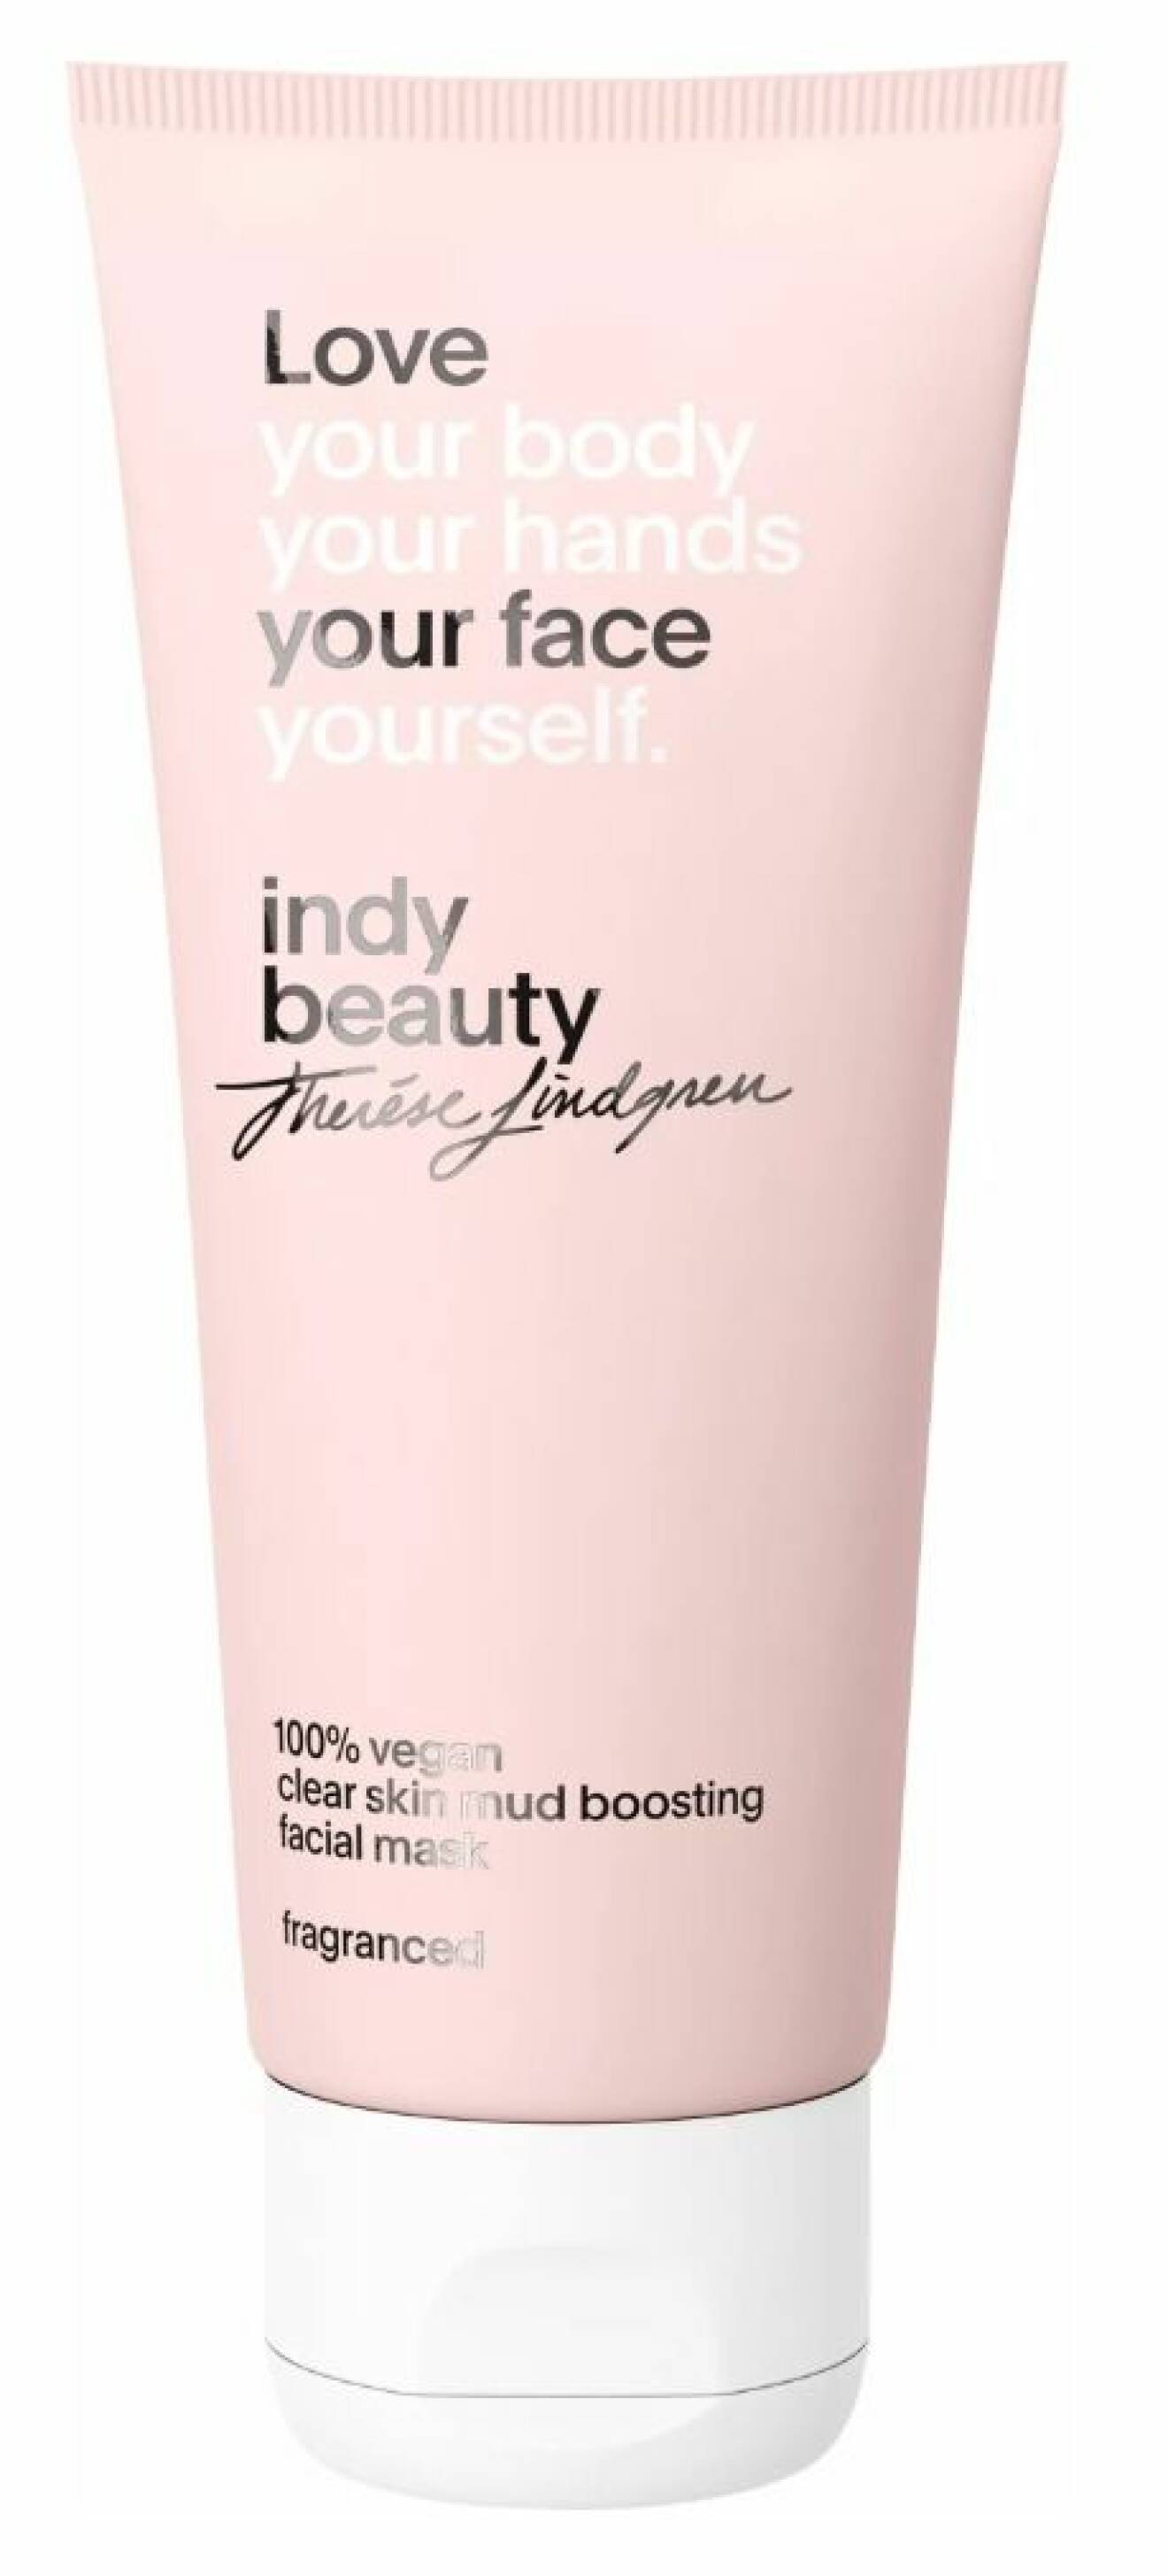 Ansiktsmask från Indy Beauty.